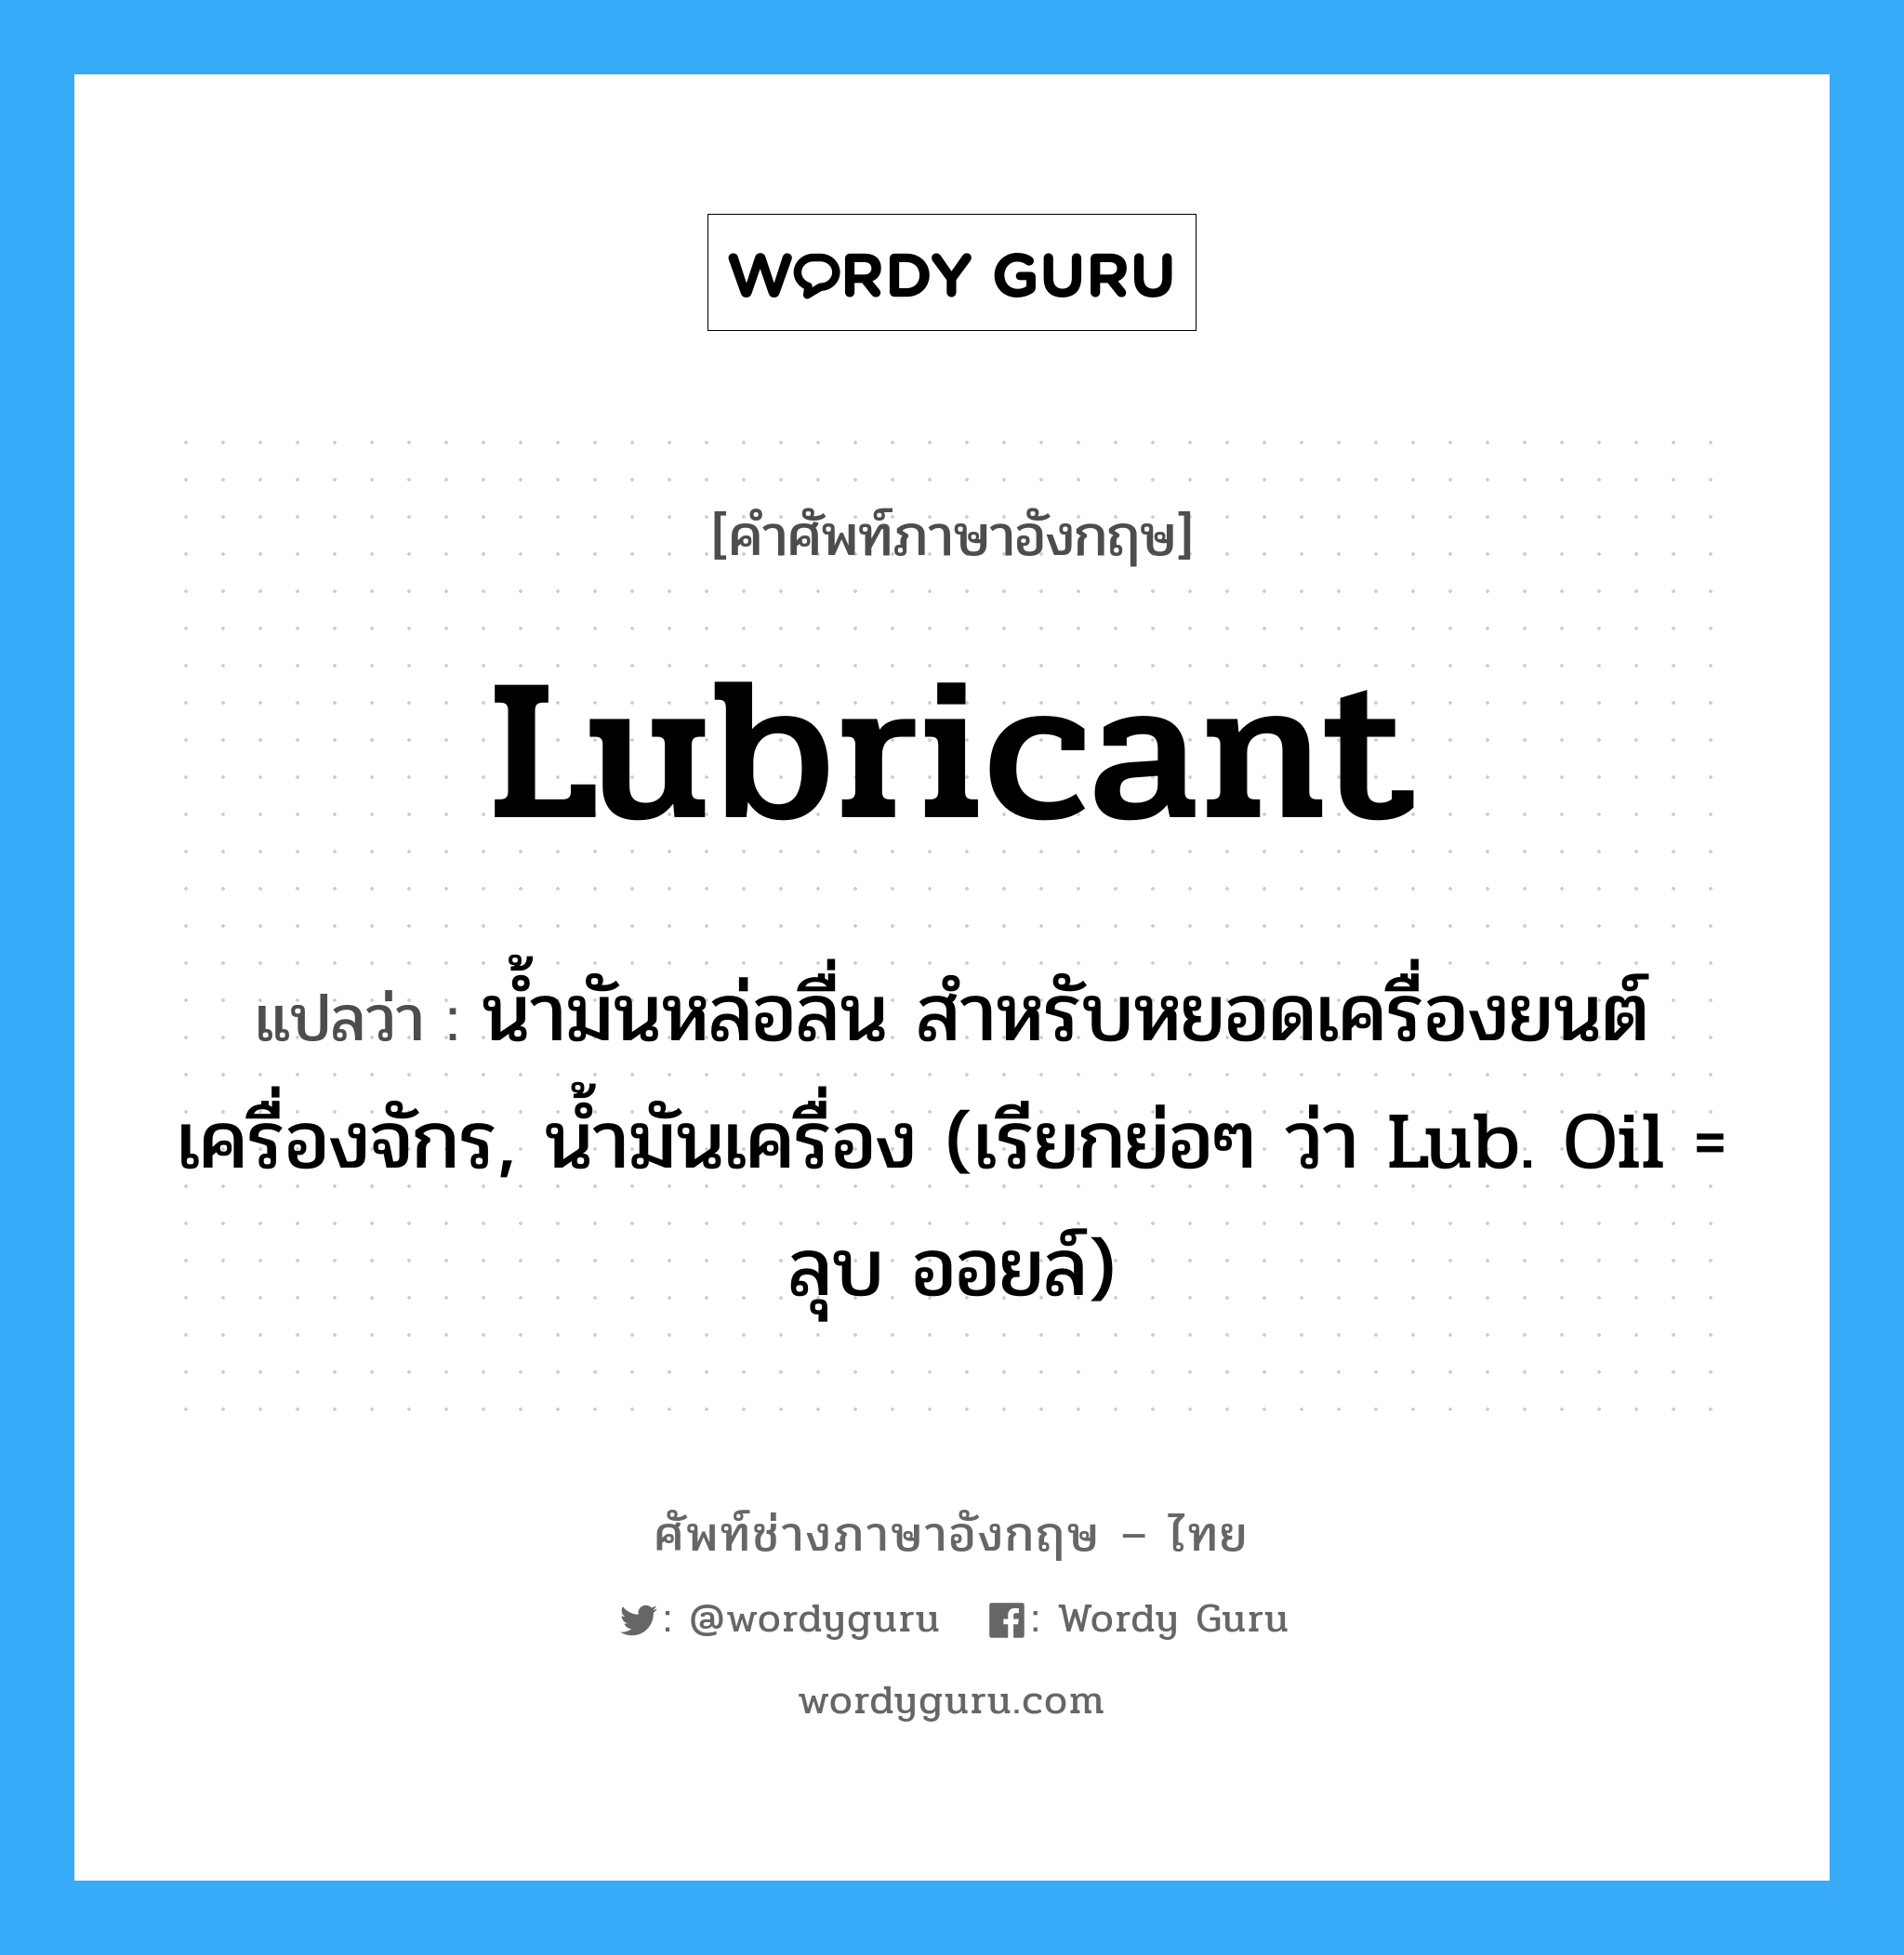 lubricant แปลว่า?, คำศัพท์ช่างภาษาอังกฤษ - ไทย lubricant คำศัพท์ภาษาอังกฤษ lubricant แปลว่า น้ำมันหล่อลื่น สำหรับหยอดเครื่องยนต์ เครื่องจักร, น้ำมันเครื่อง (เรียกย่อๆ ว่า Lub. Oil = ลุบ ออยล์)